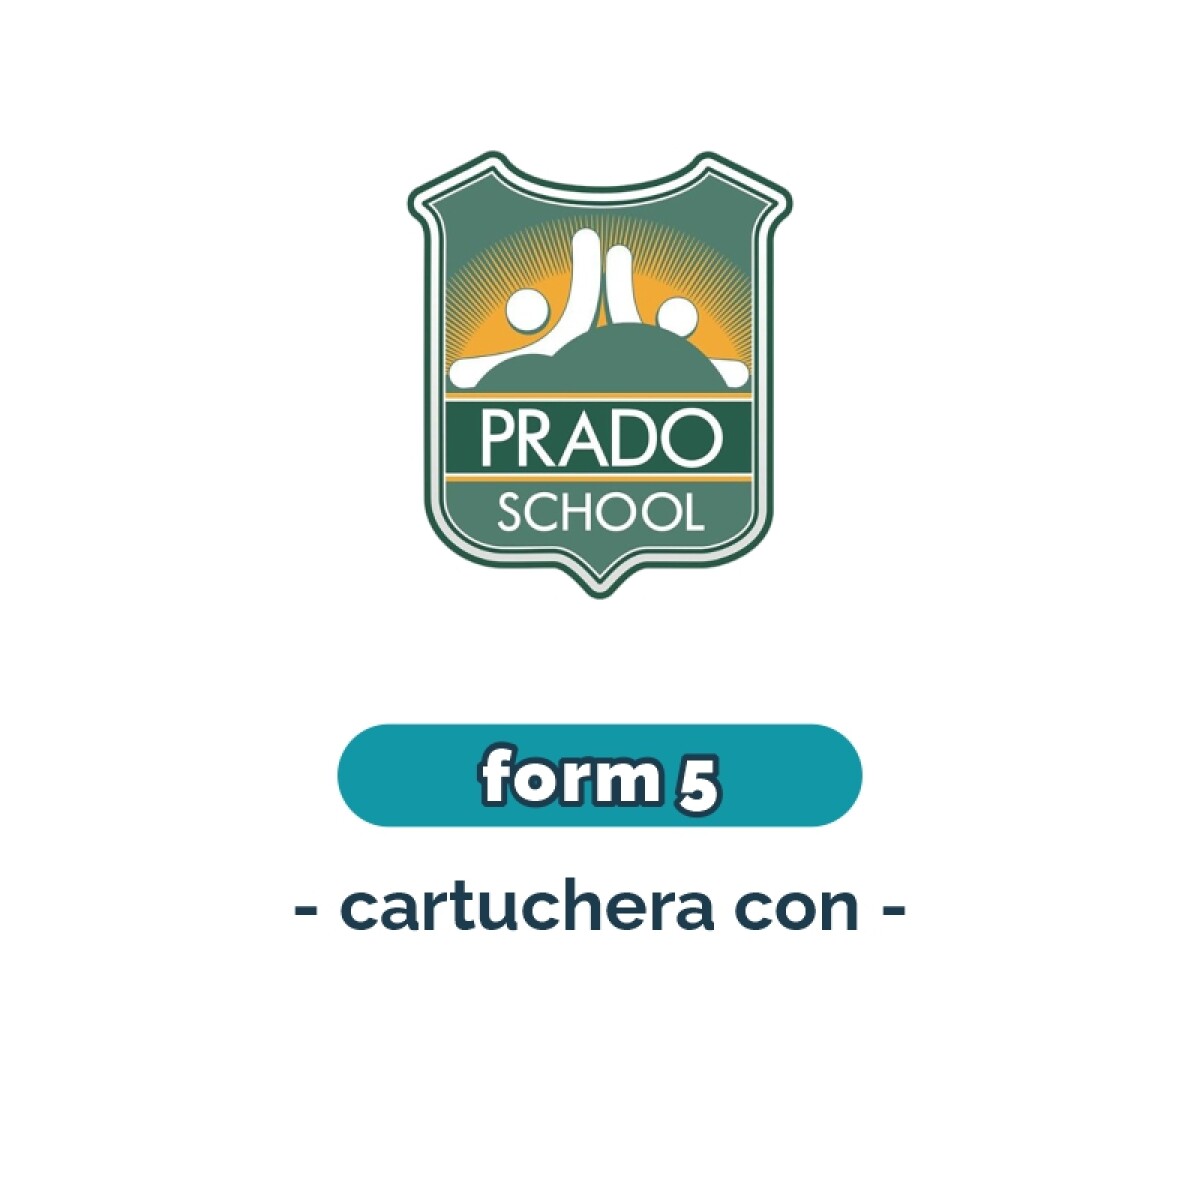 Lista de materiales - Primaria Form 5 cartuchera Prado School 